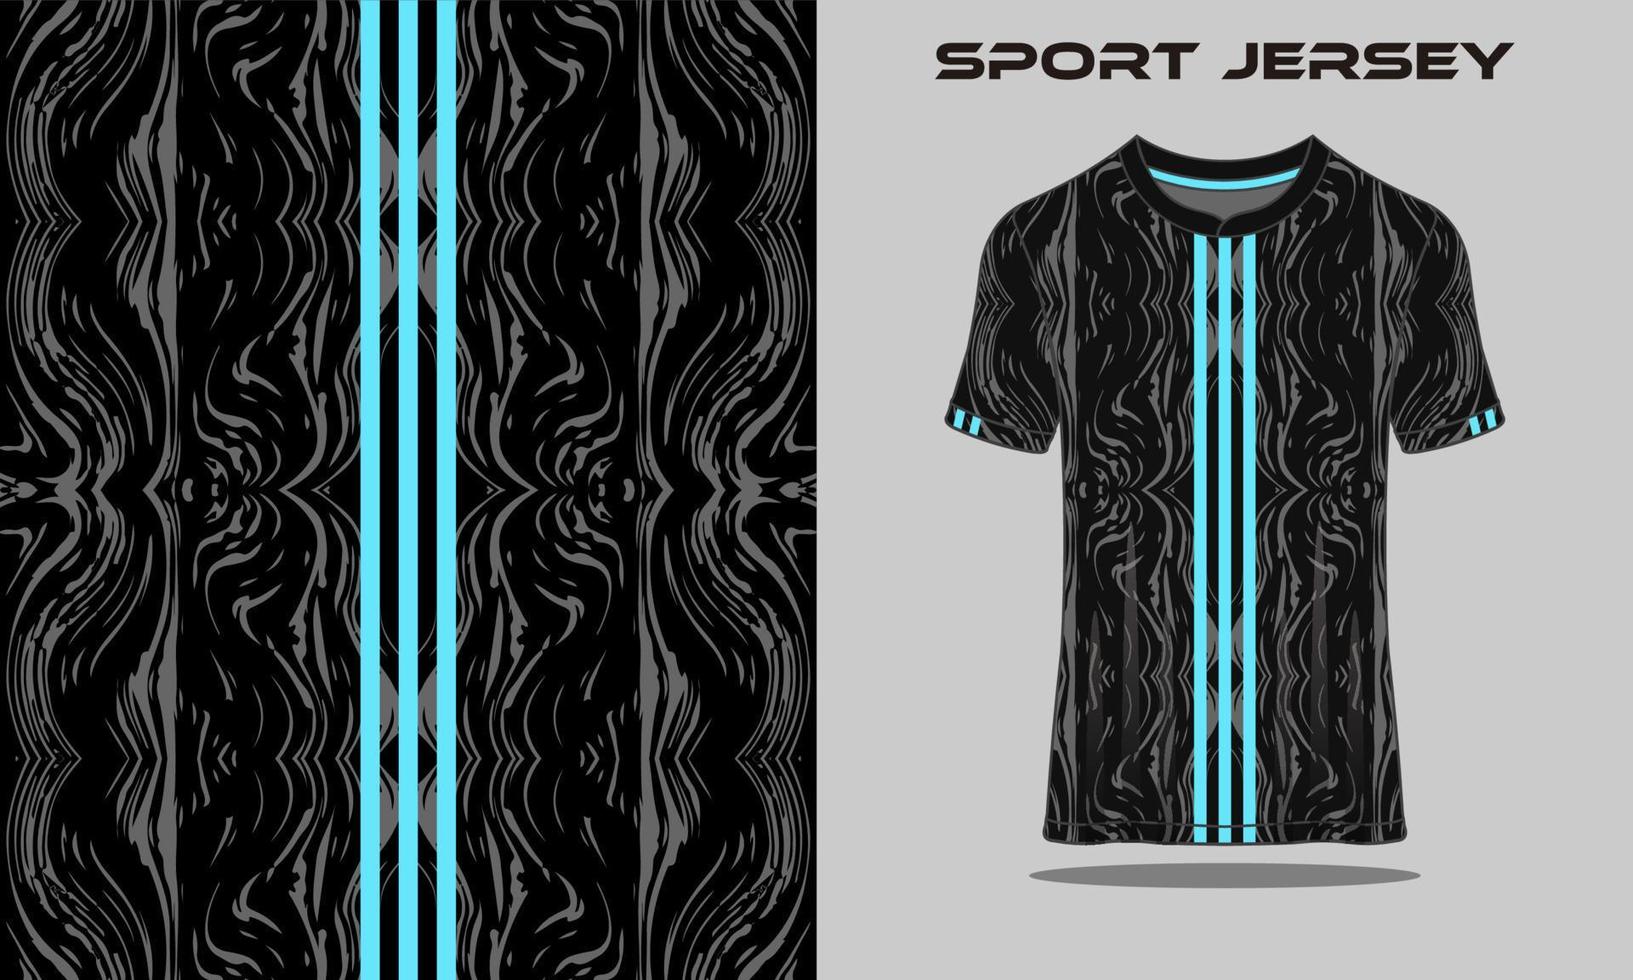 T-Shirt-Jersey-Grunge-Uniform vektor